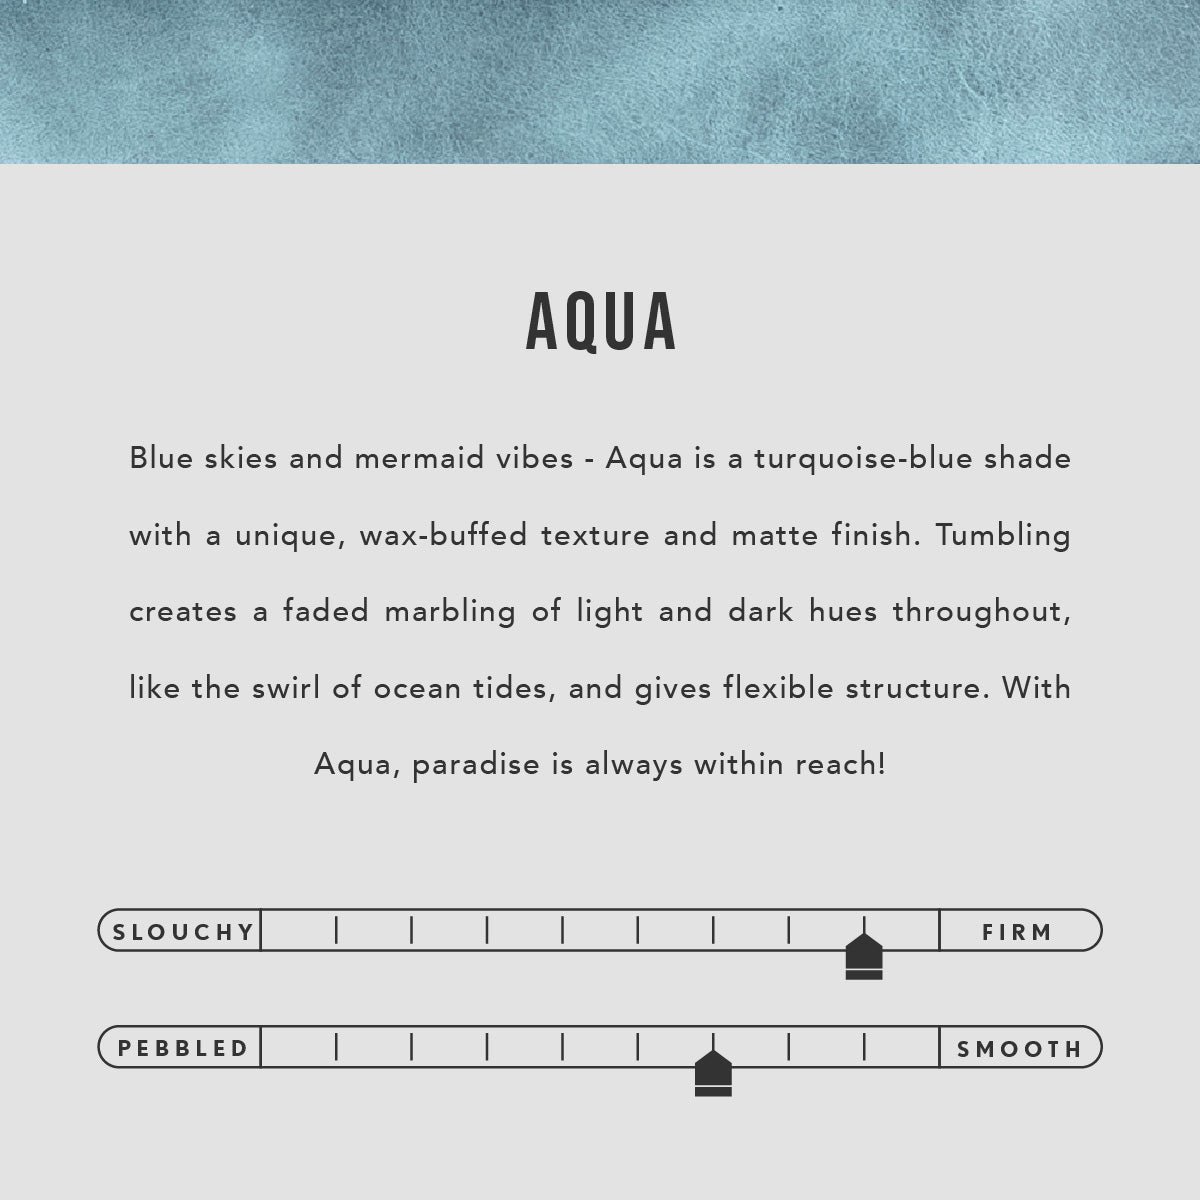 Aqua | infographic